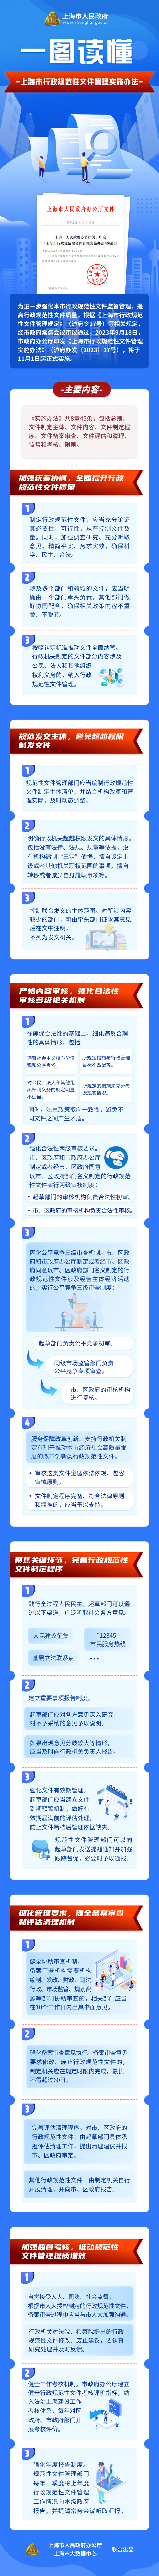 一图读懂《上海市行政规范性文件管理实施办法》.png